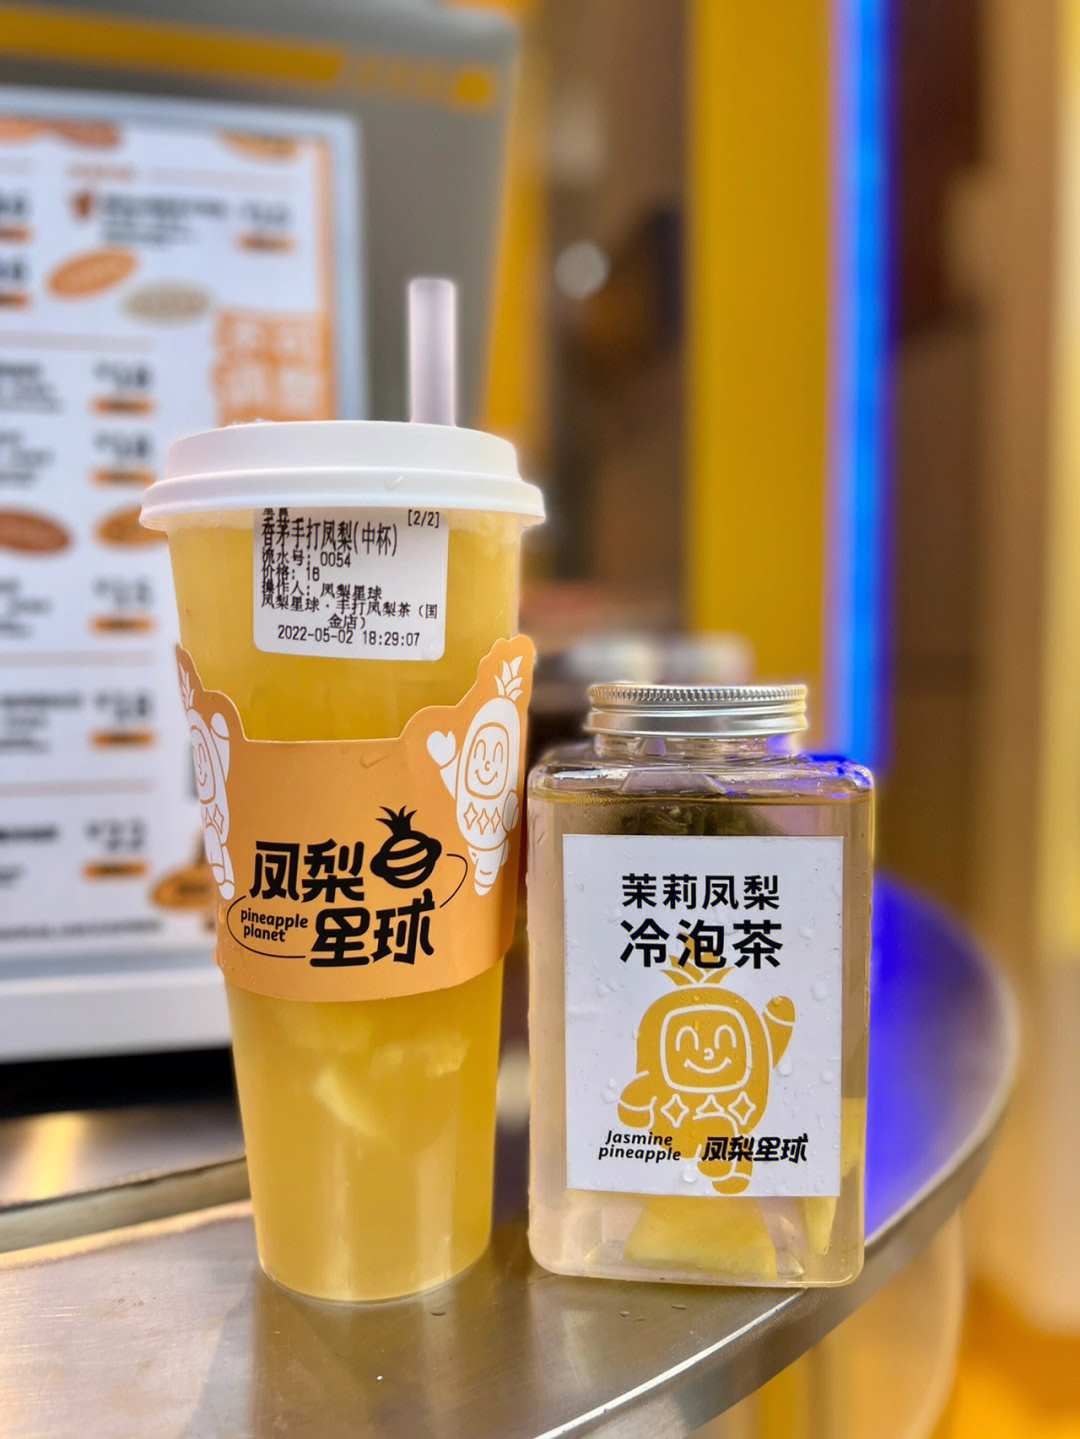 一家全国首创的手打凤梨果茶,夏天绝对不能错过的奶茶店92店名:凤梨